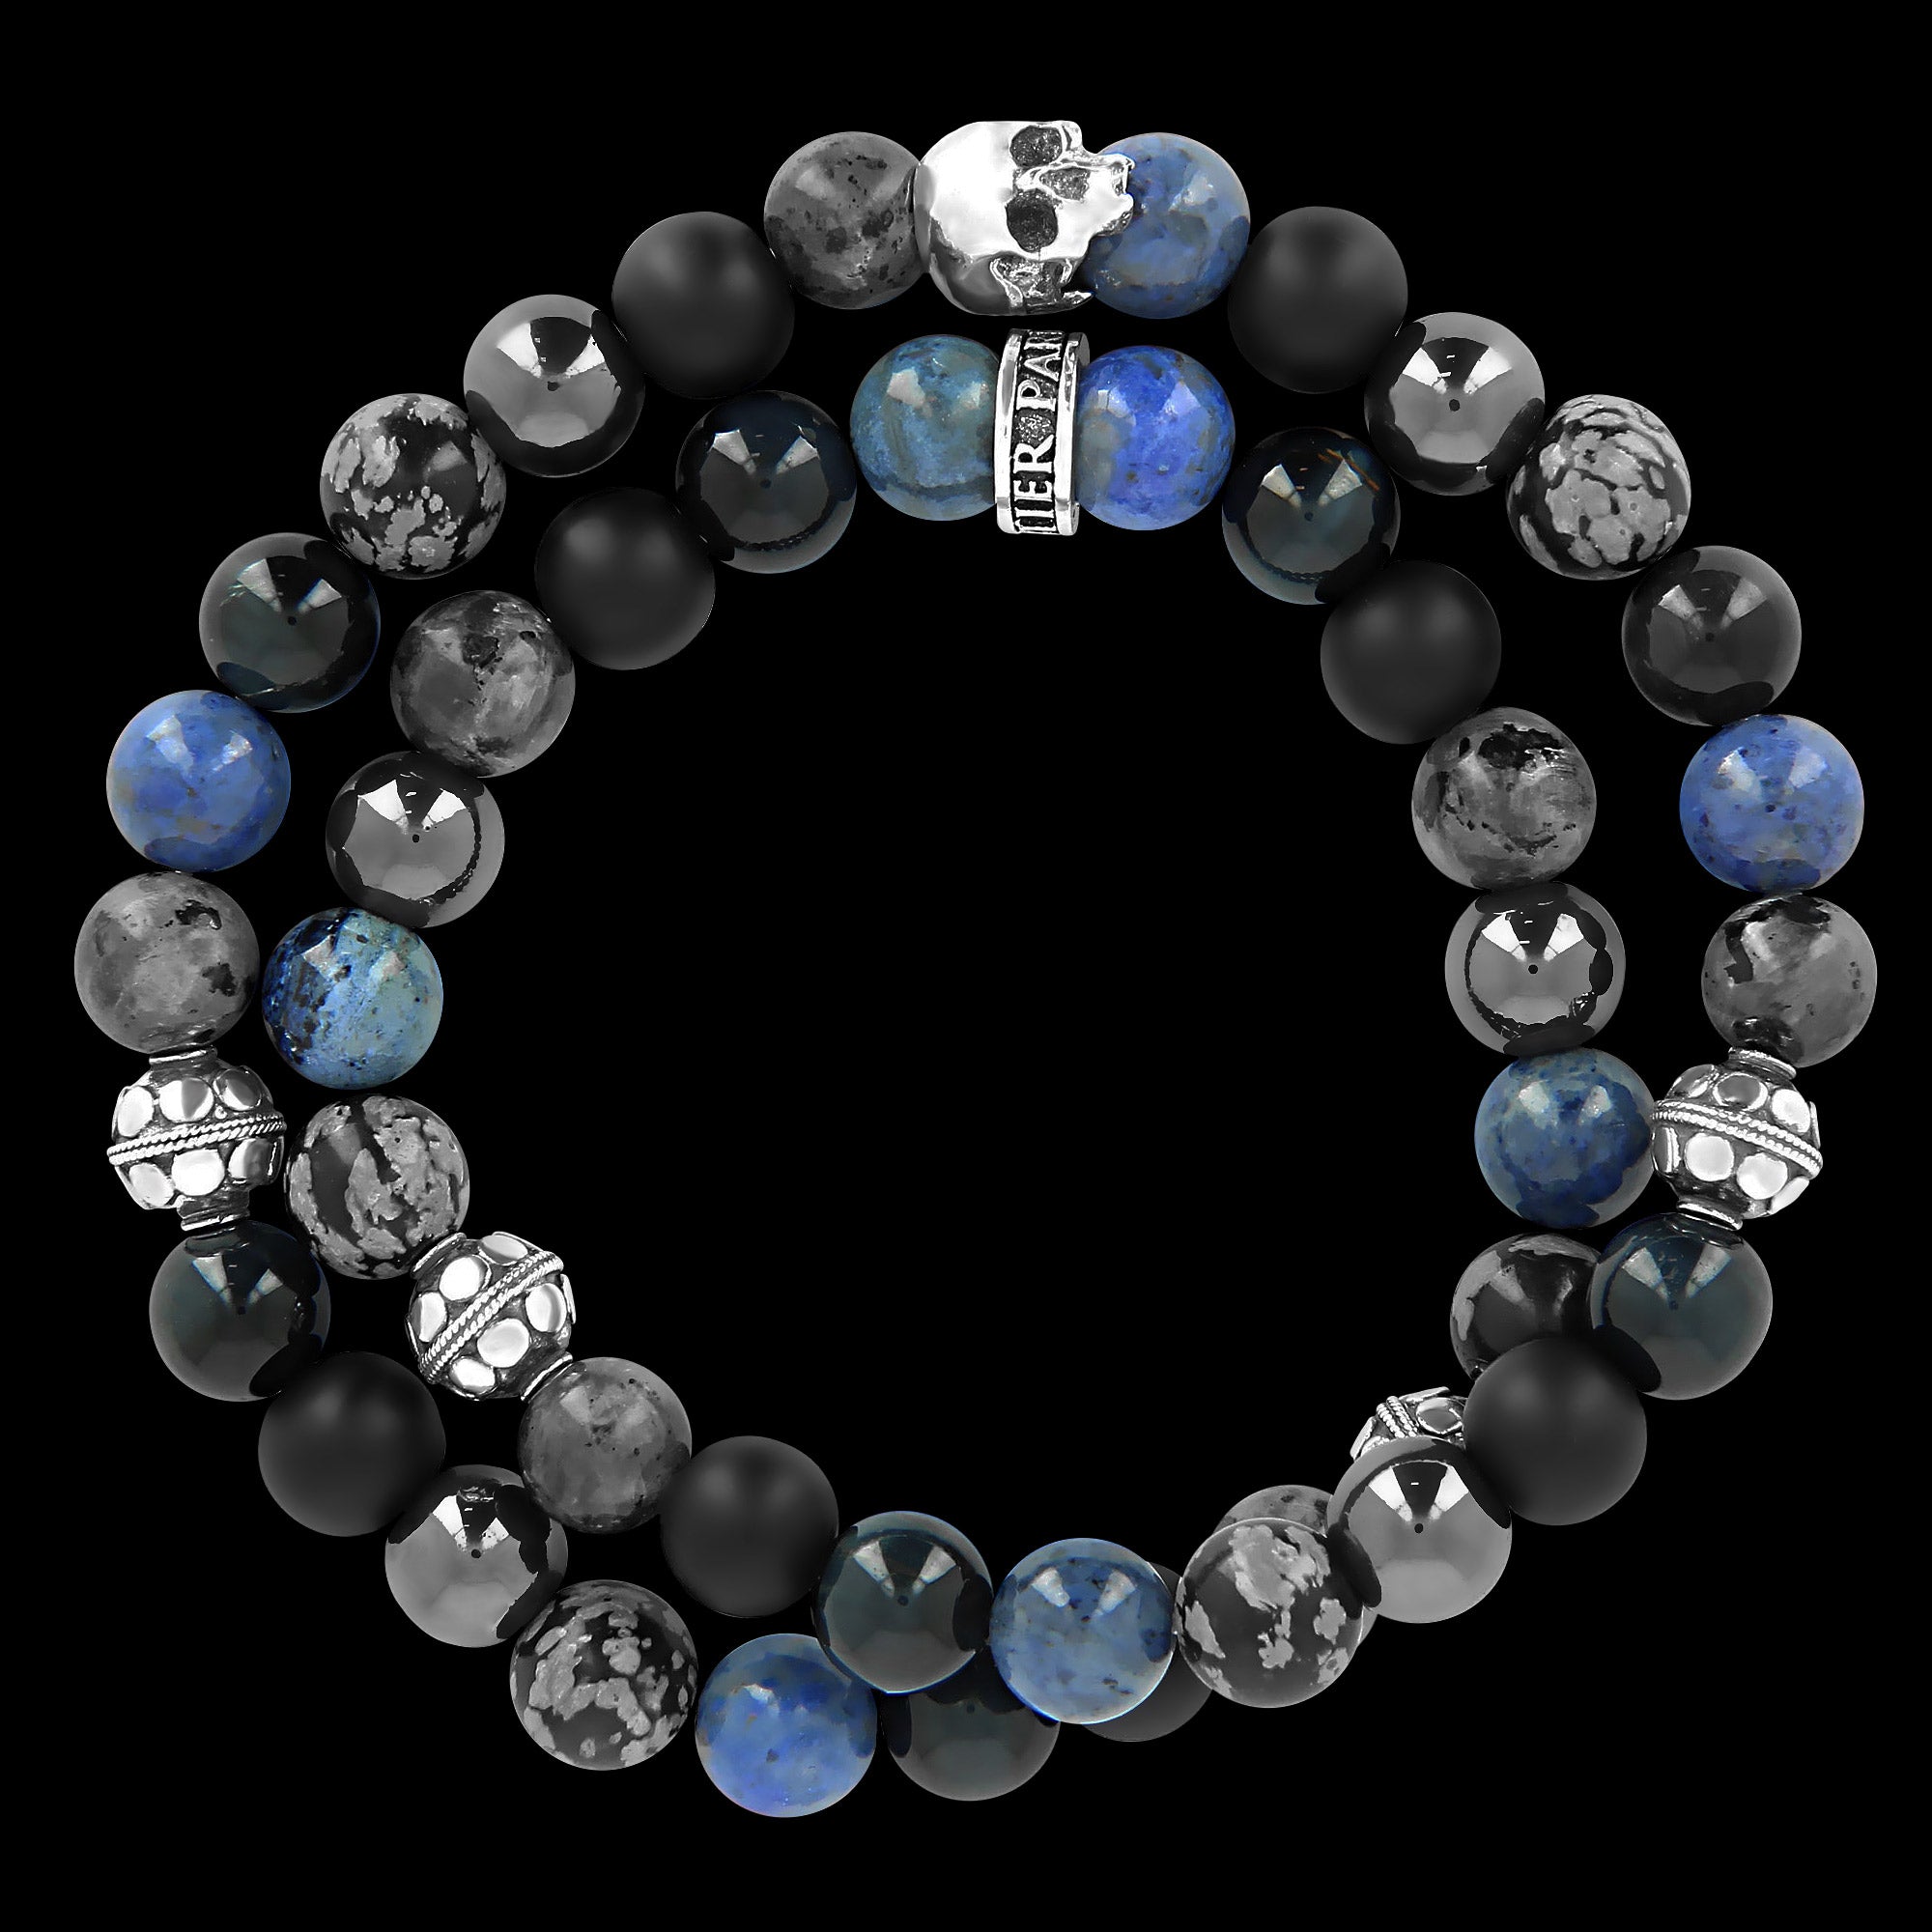 Abyssal blue Wrap - gemstones and Sterling Silver bracelet